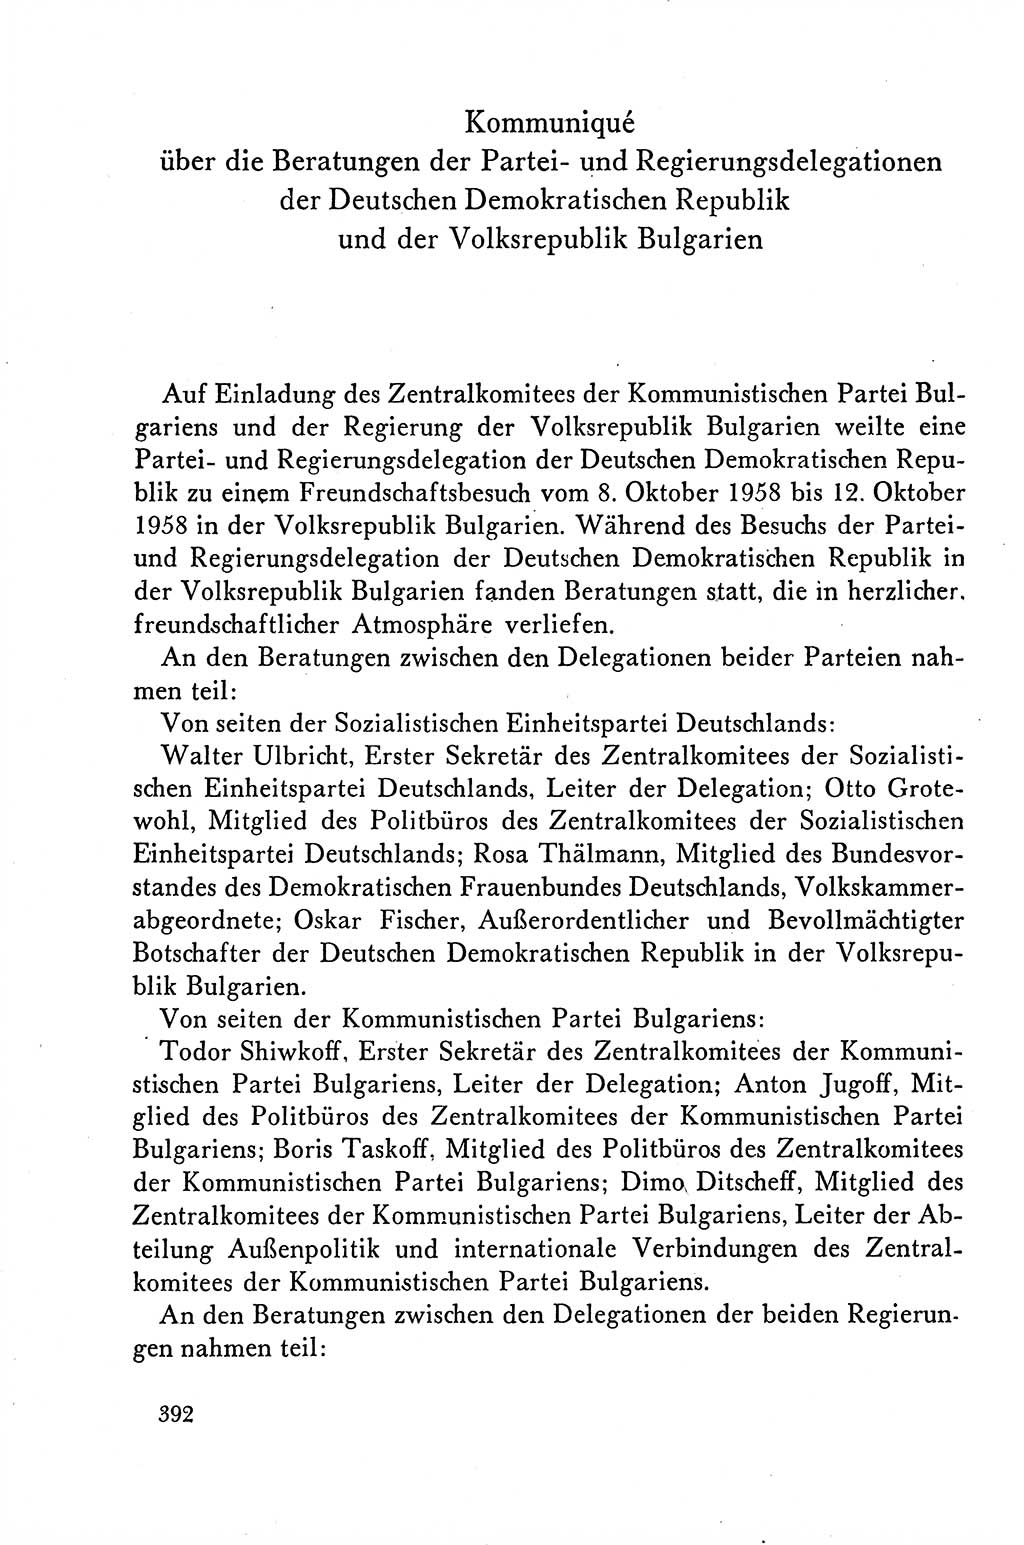 Dokumente der Sozialistischen Einheitspartei Deutschlands (SED) [Deutsche Demokratische Republik (DDR)] 1958-1959, Seite 392 (Dok. SED DDR 1958-1959, S. 392)